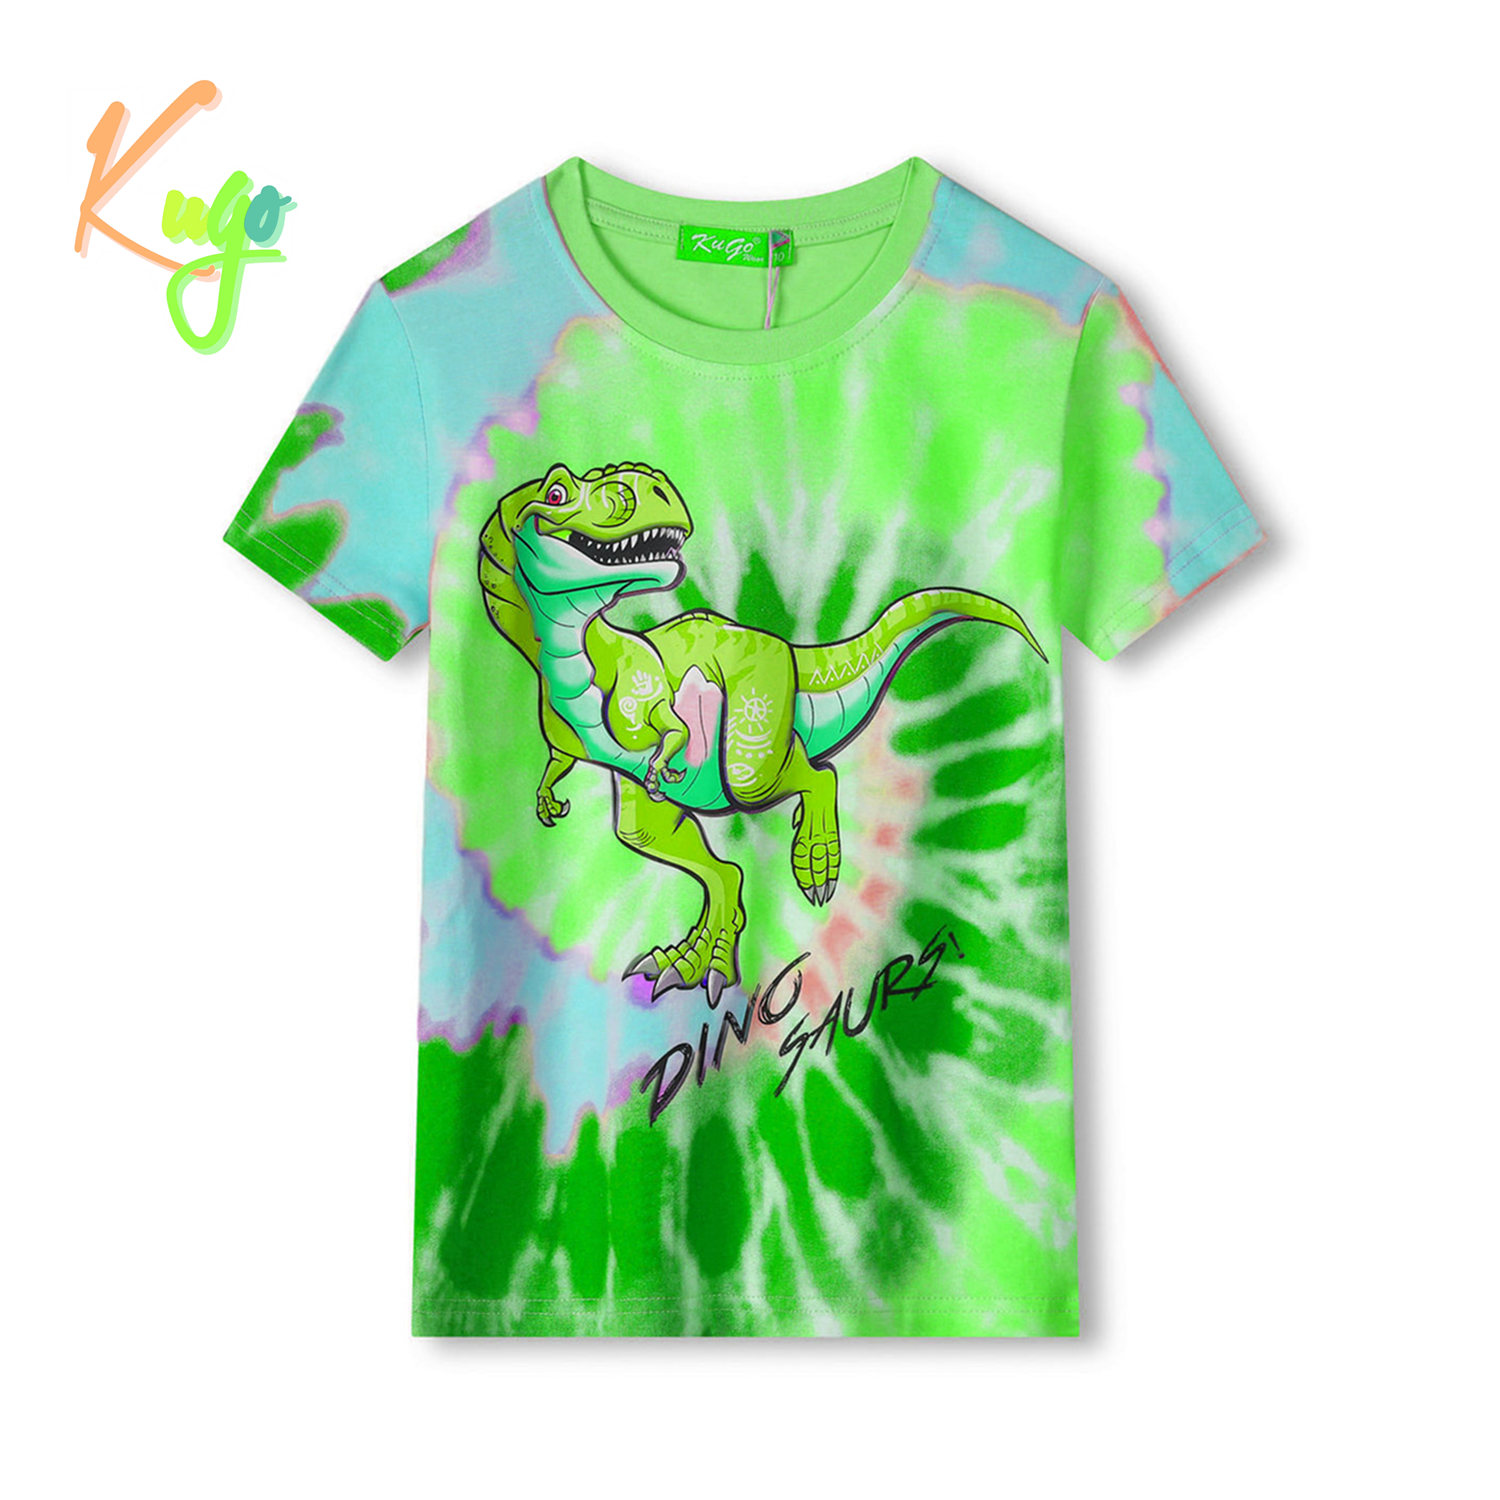 Chlapecké tričko - KUGO FC0301, zelená / modrý dinosaurus Barva: Zelená, Velikost: 122